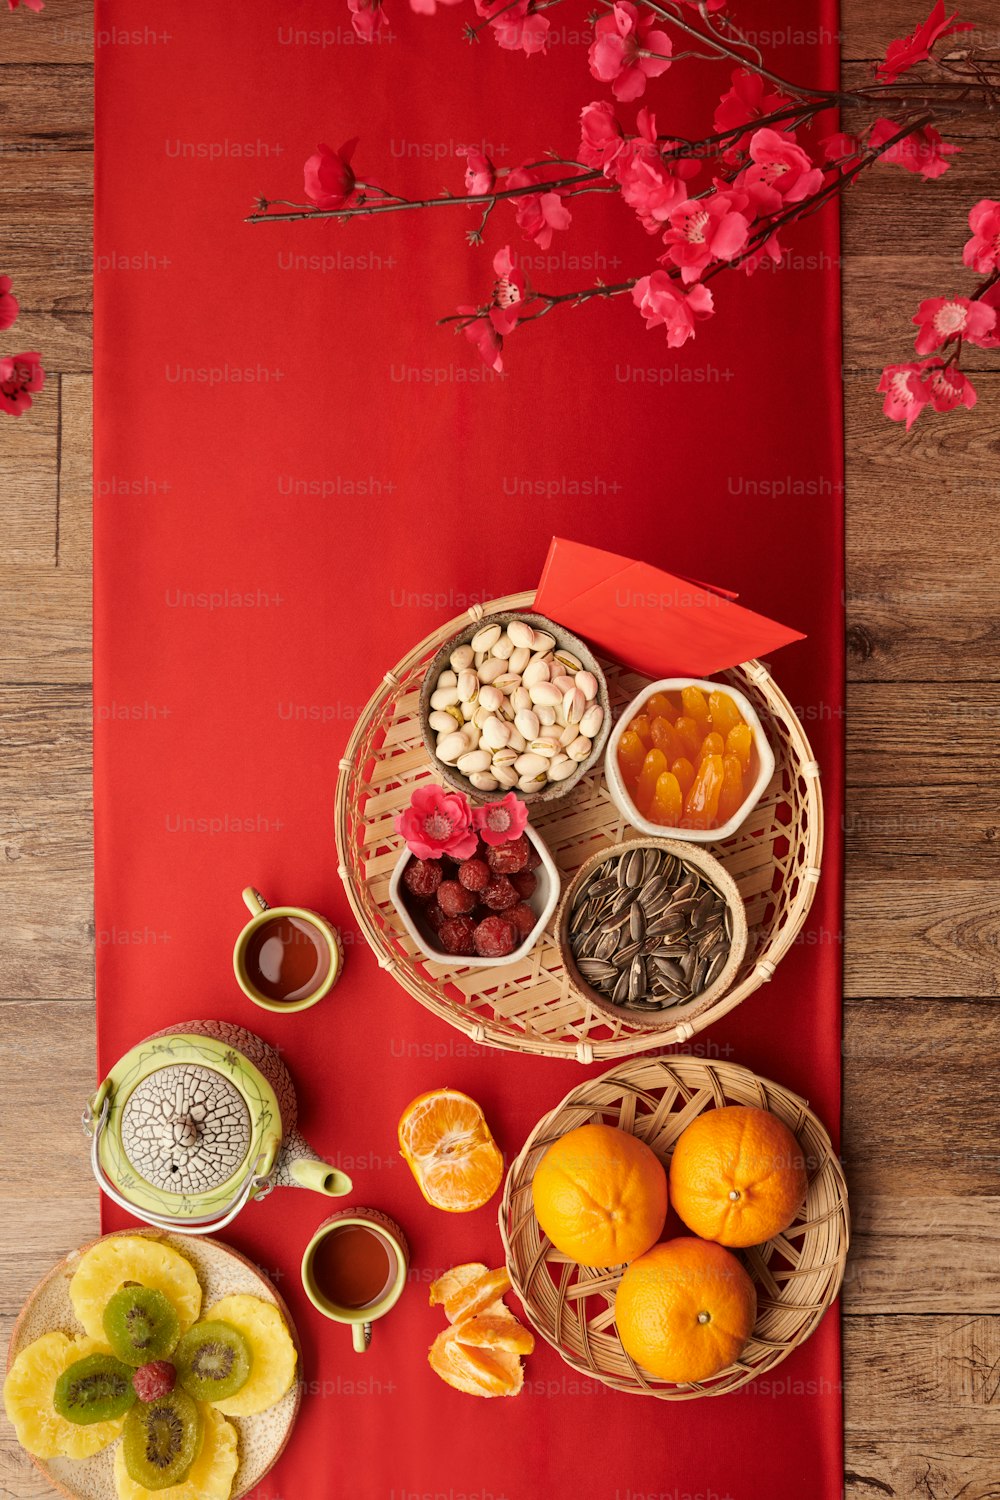 Frutas confitadas, nueces, mandarinas y té sobre mantel rojo servidos para la celebración del Tet, vista desde la parte superior